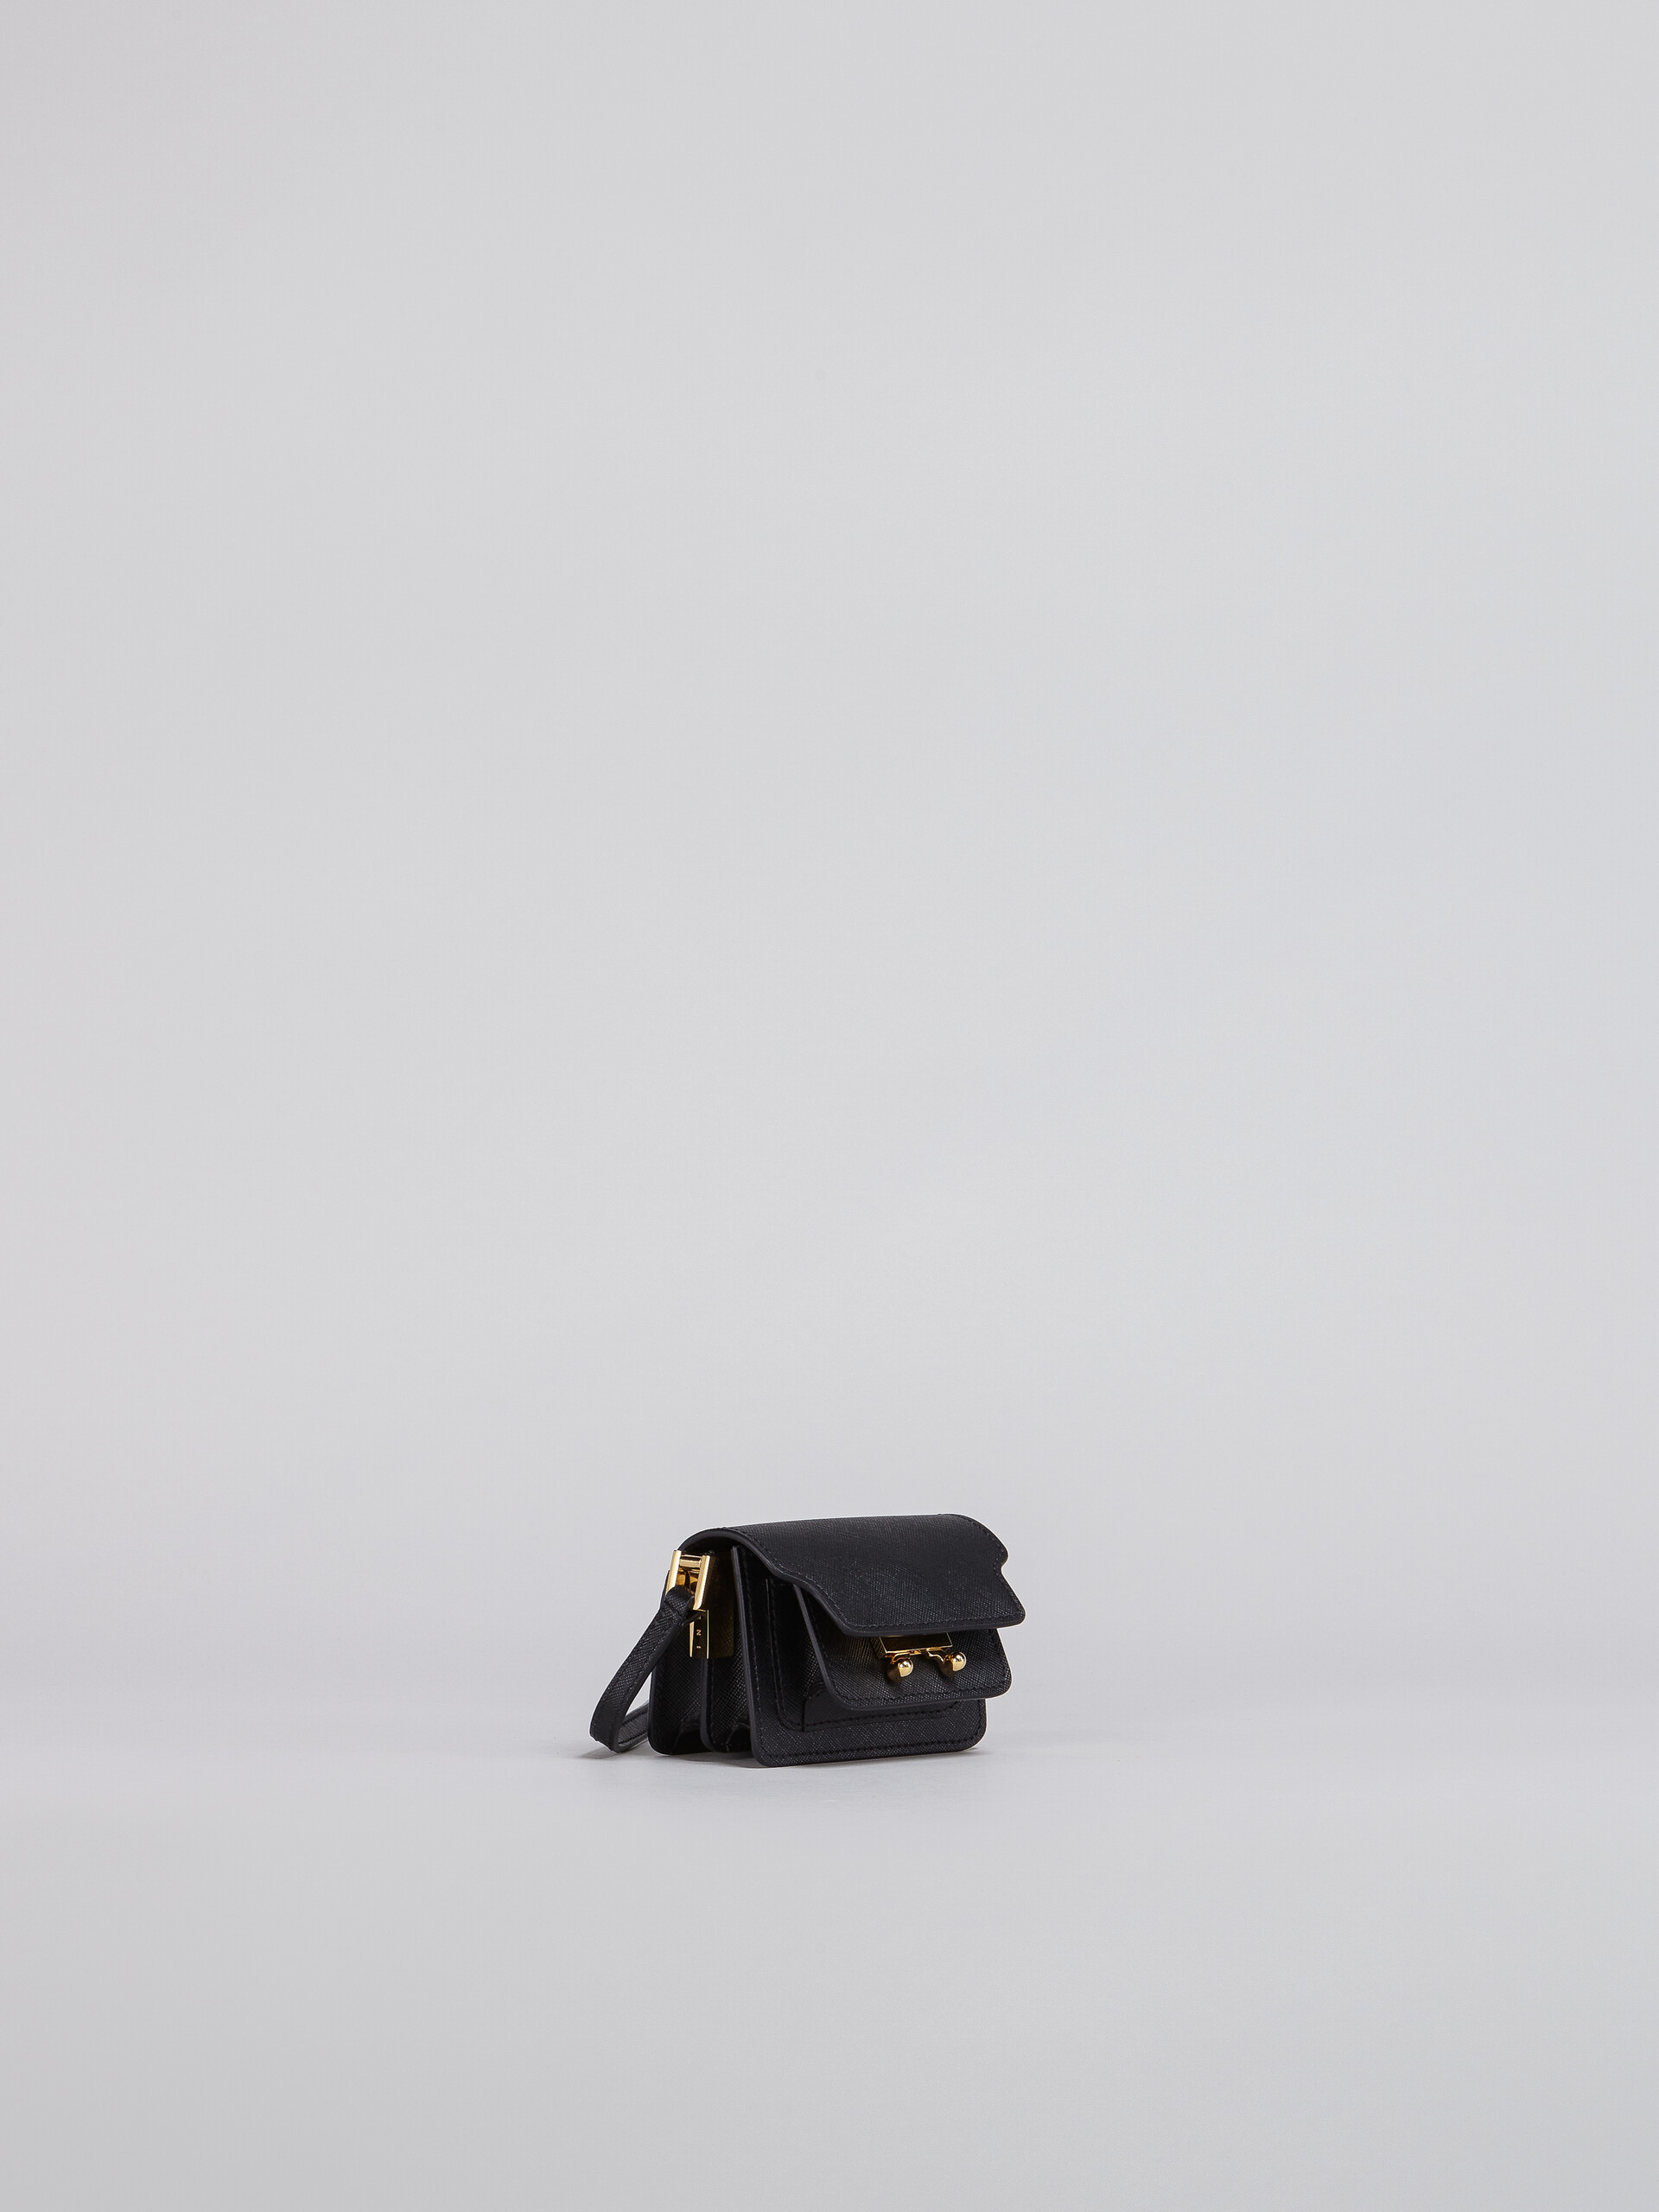 TRUNK bag nano in saffiano nero - Borse a spalla - Image 5